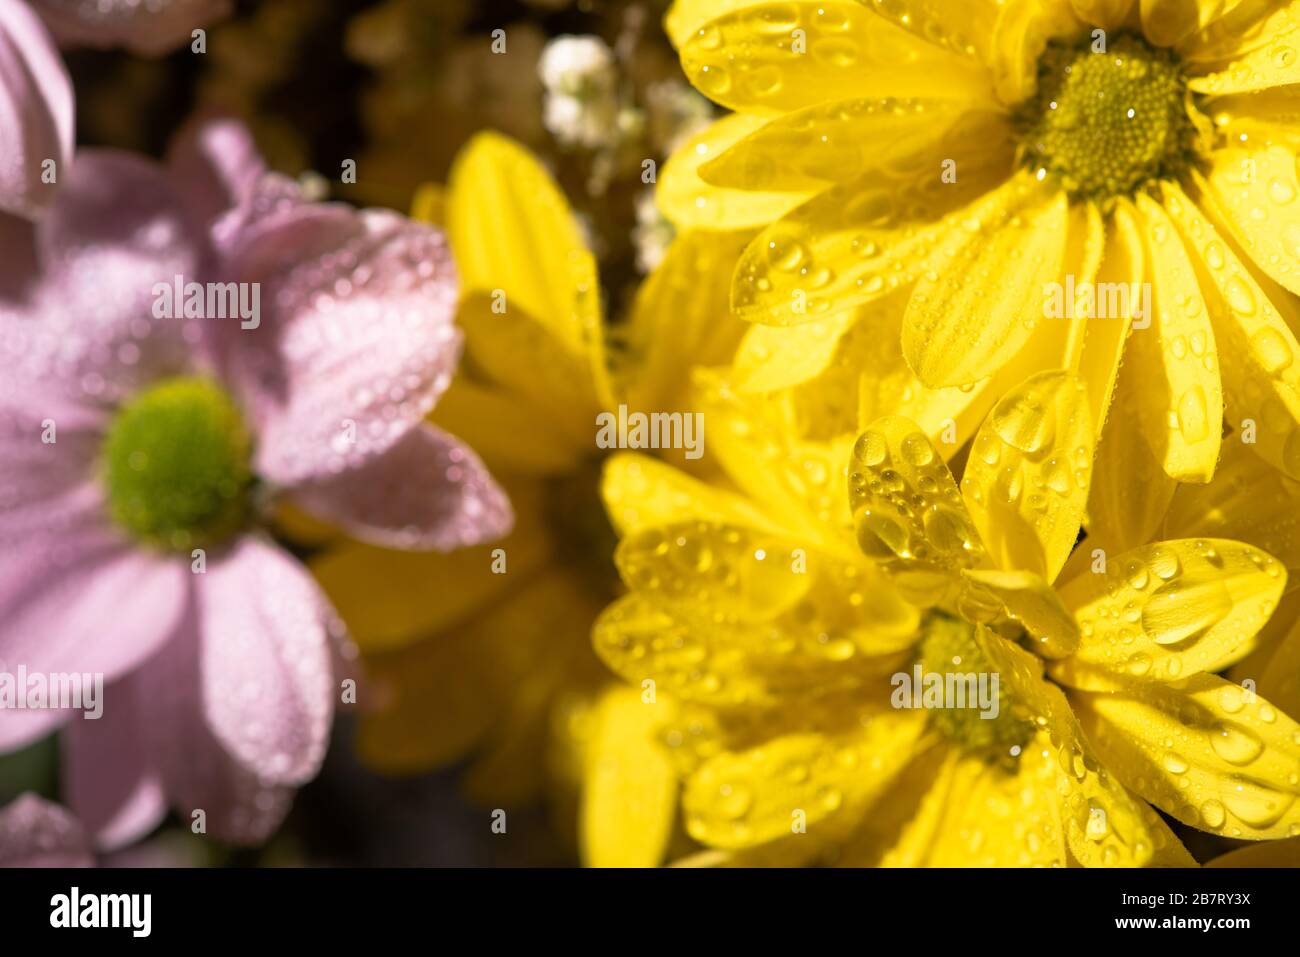 vue rapprochée des daisies jaunes et violettes avec gouttes d'eau Banque D'Images